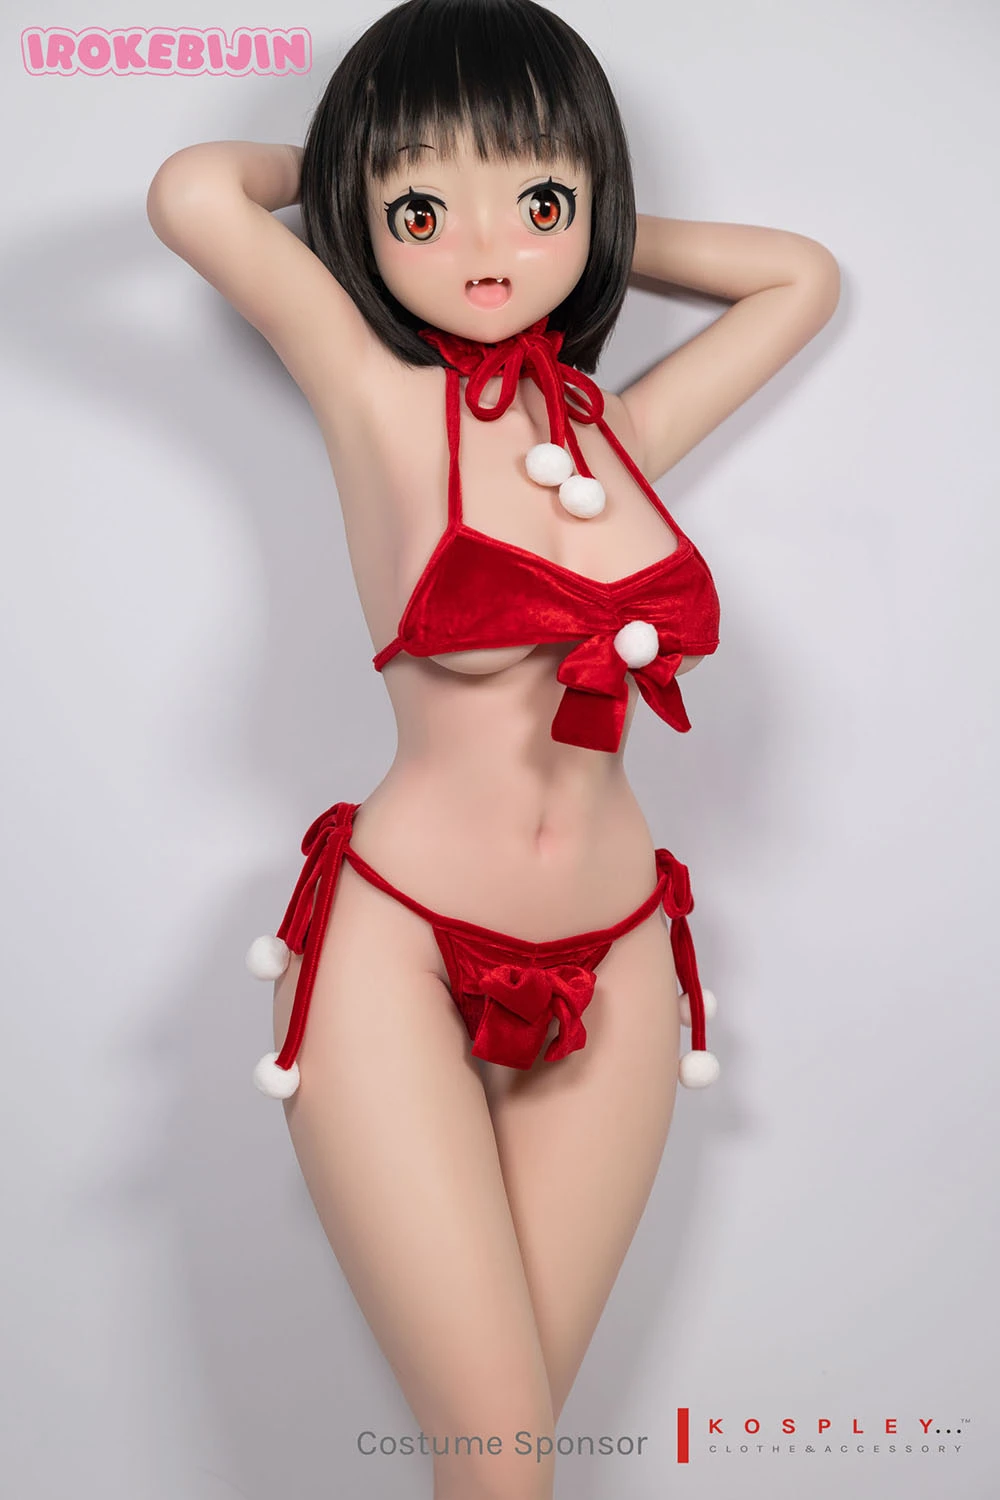 Anime sex doll